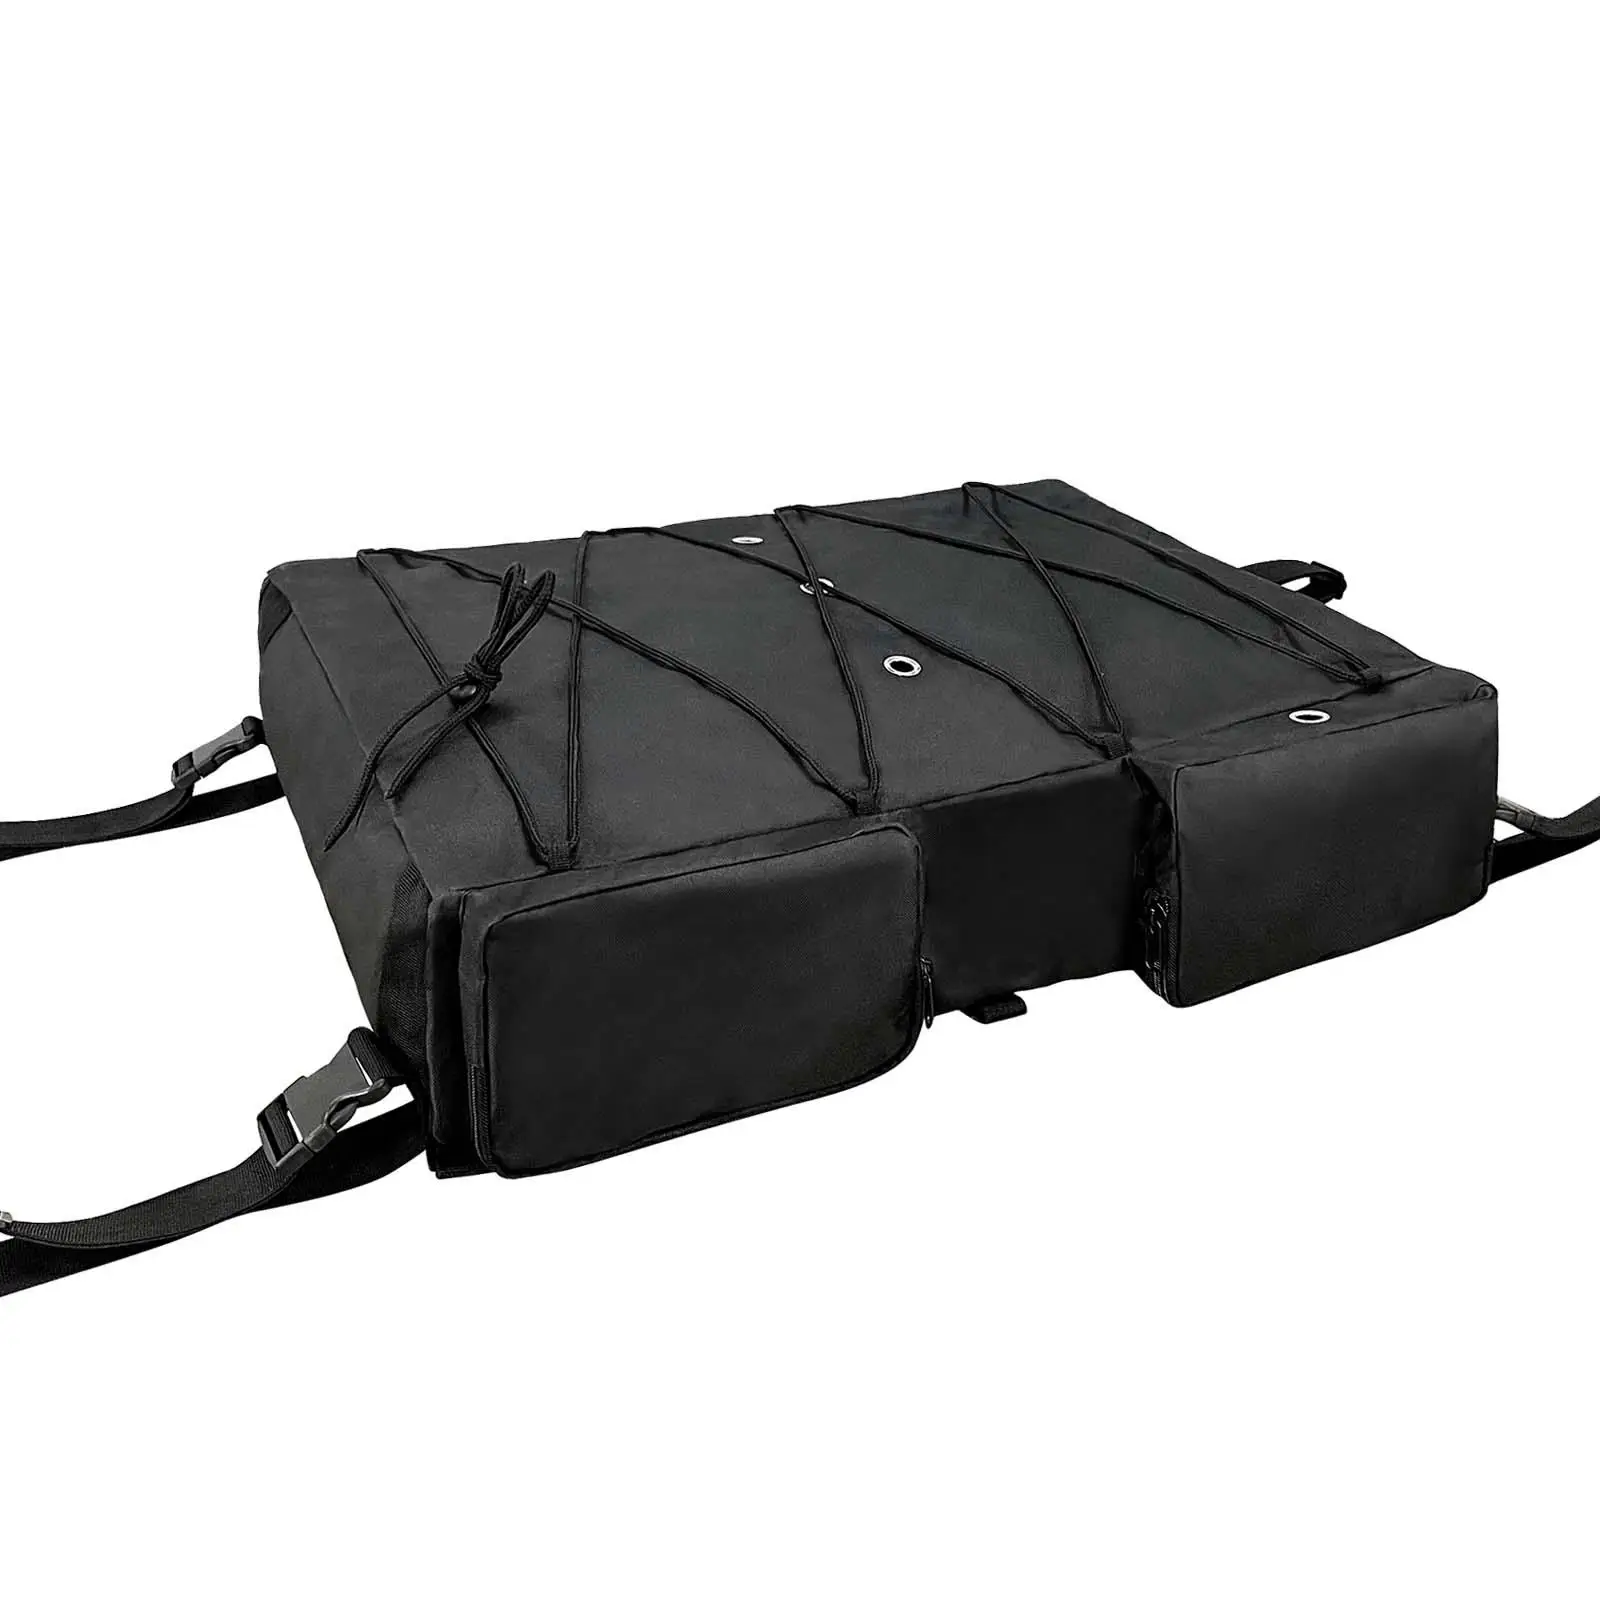 Bimini Top Storage Bag for Boat Replacement T Bag T Top Bimini Storage Pack